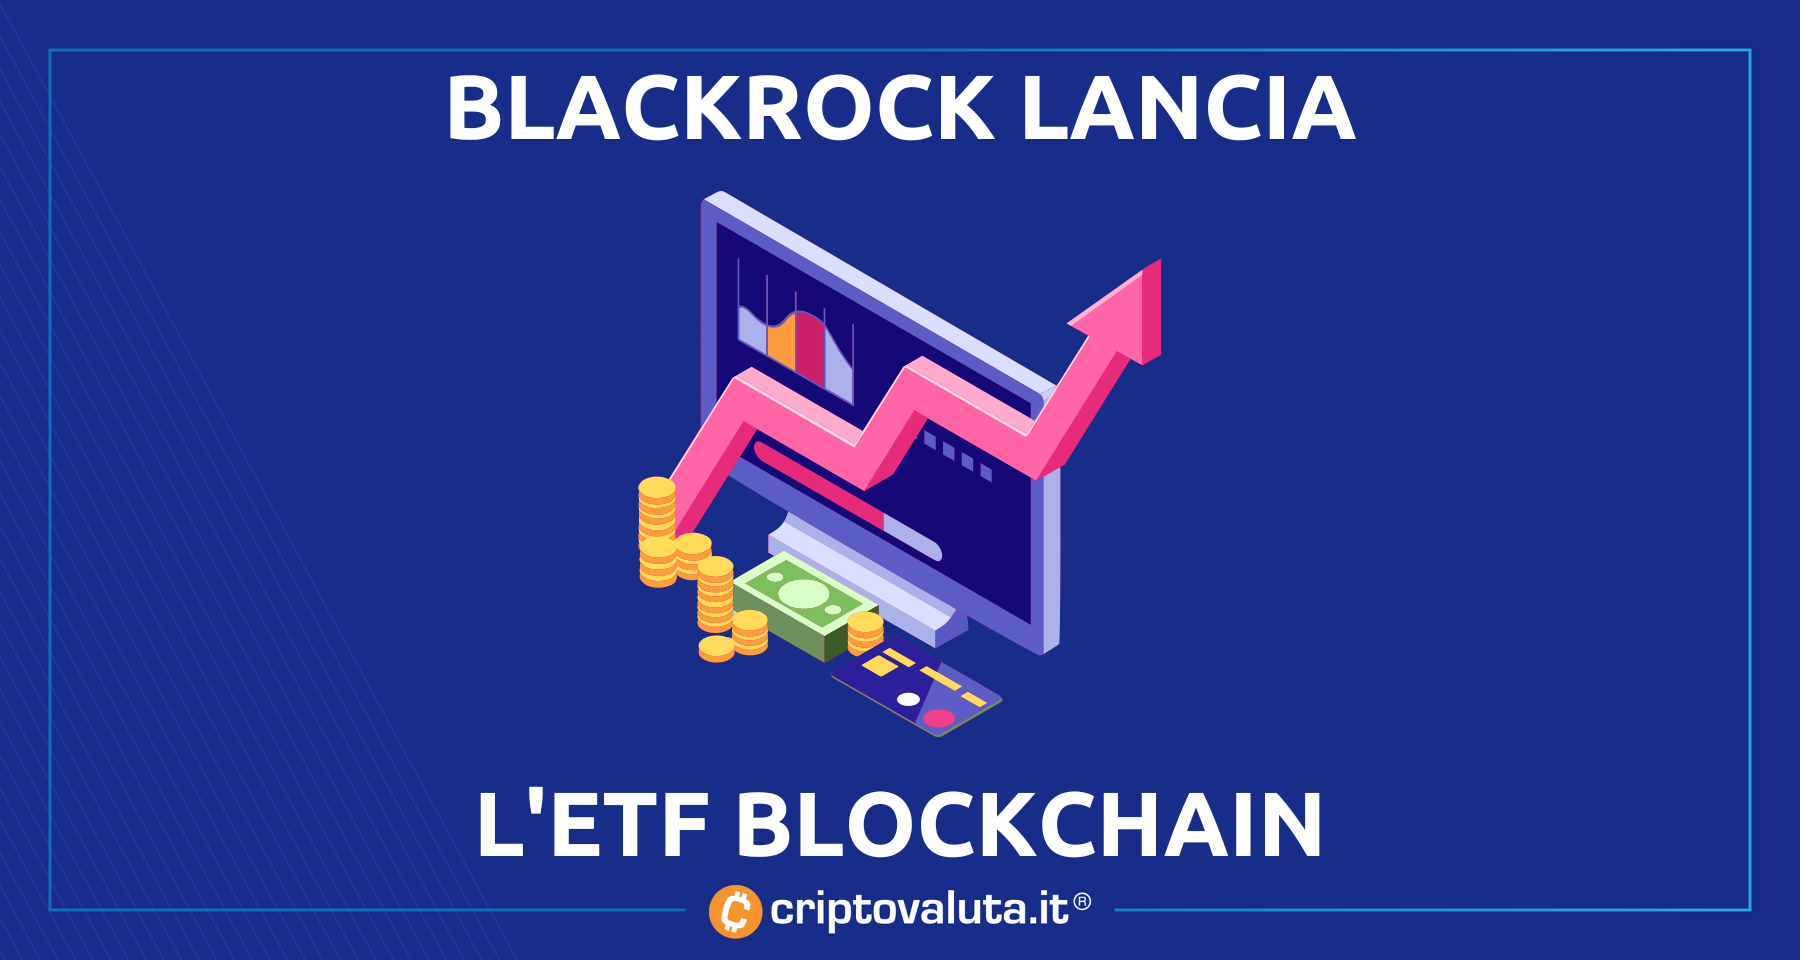 BlackRock lancia il fondo blockchain | Il mondo Bitcoin e cripto in un ETF